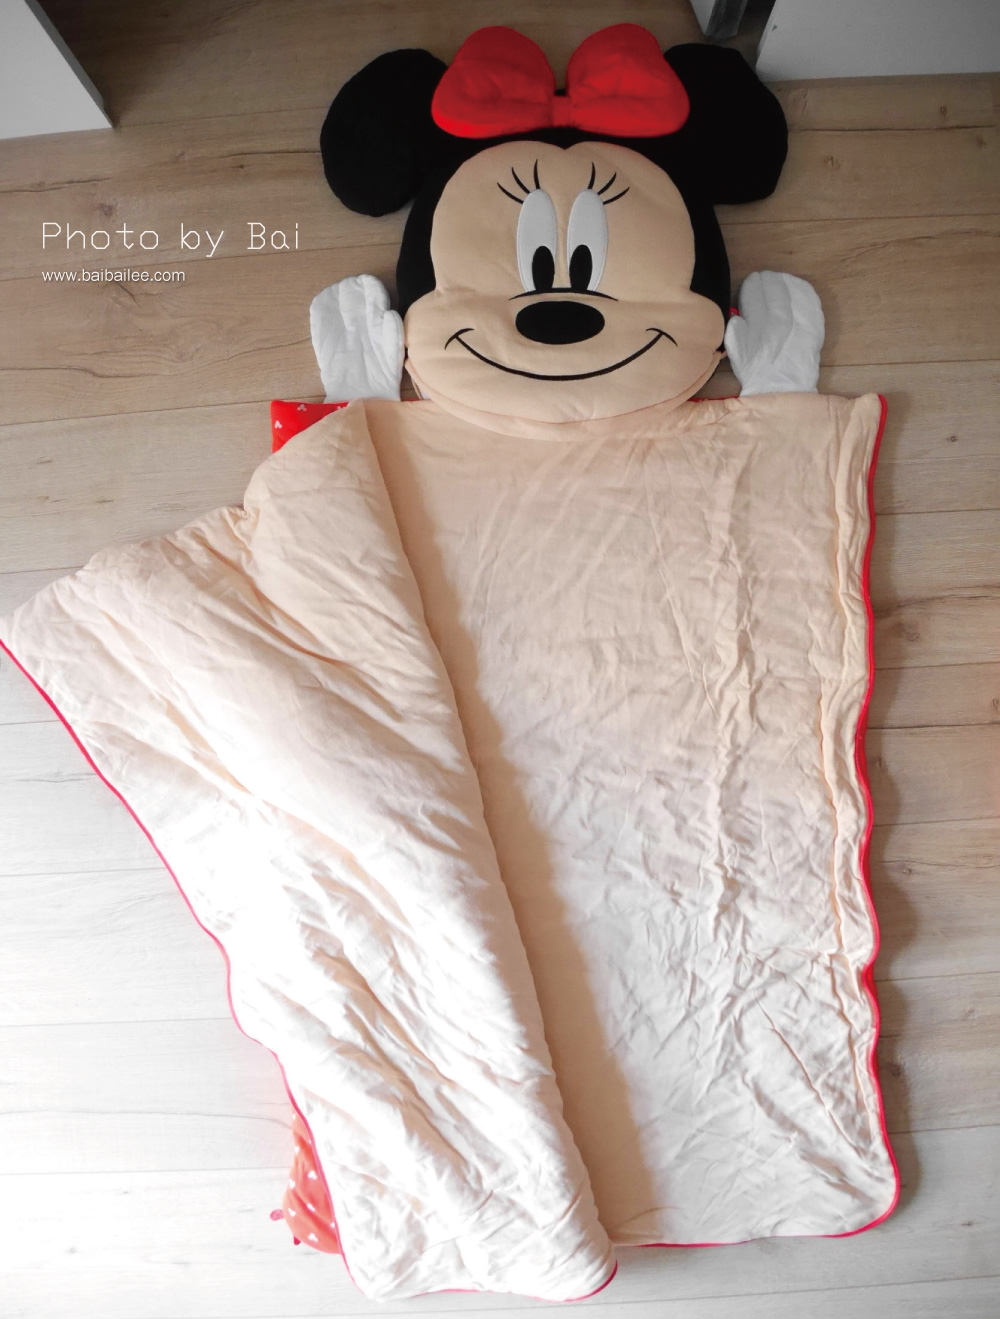 [寶寶] 讓小朋友都為之瘋狂的美國Zoobies佩佩豬及迪士尼3合1玩偶毯xZoobies迪士尼睡袋